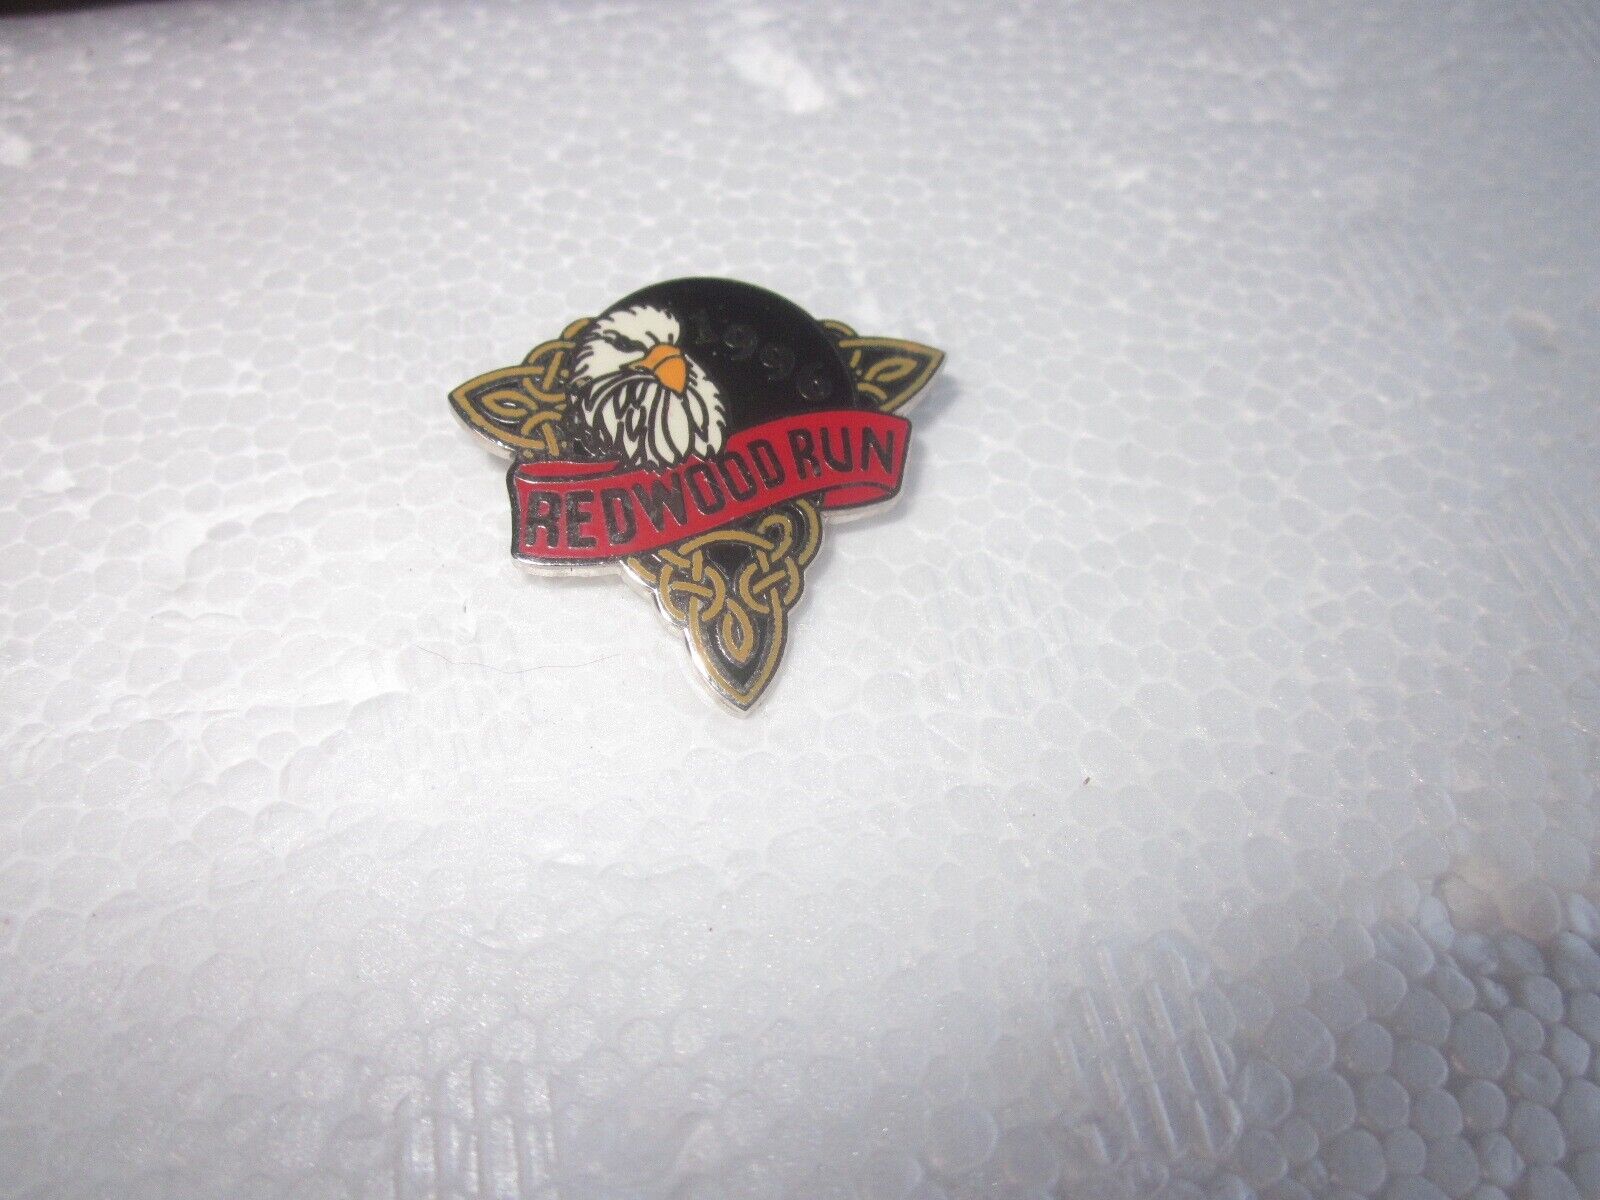 Vintage 1996 REDWOOD RUN Motorcycle PIN